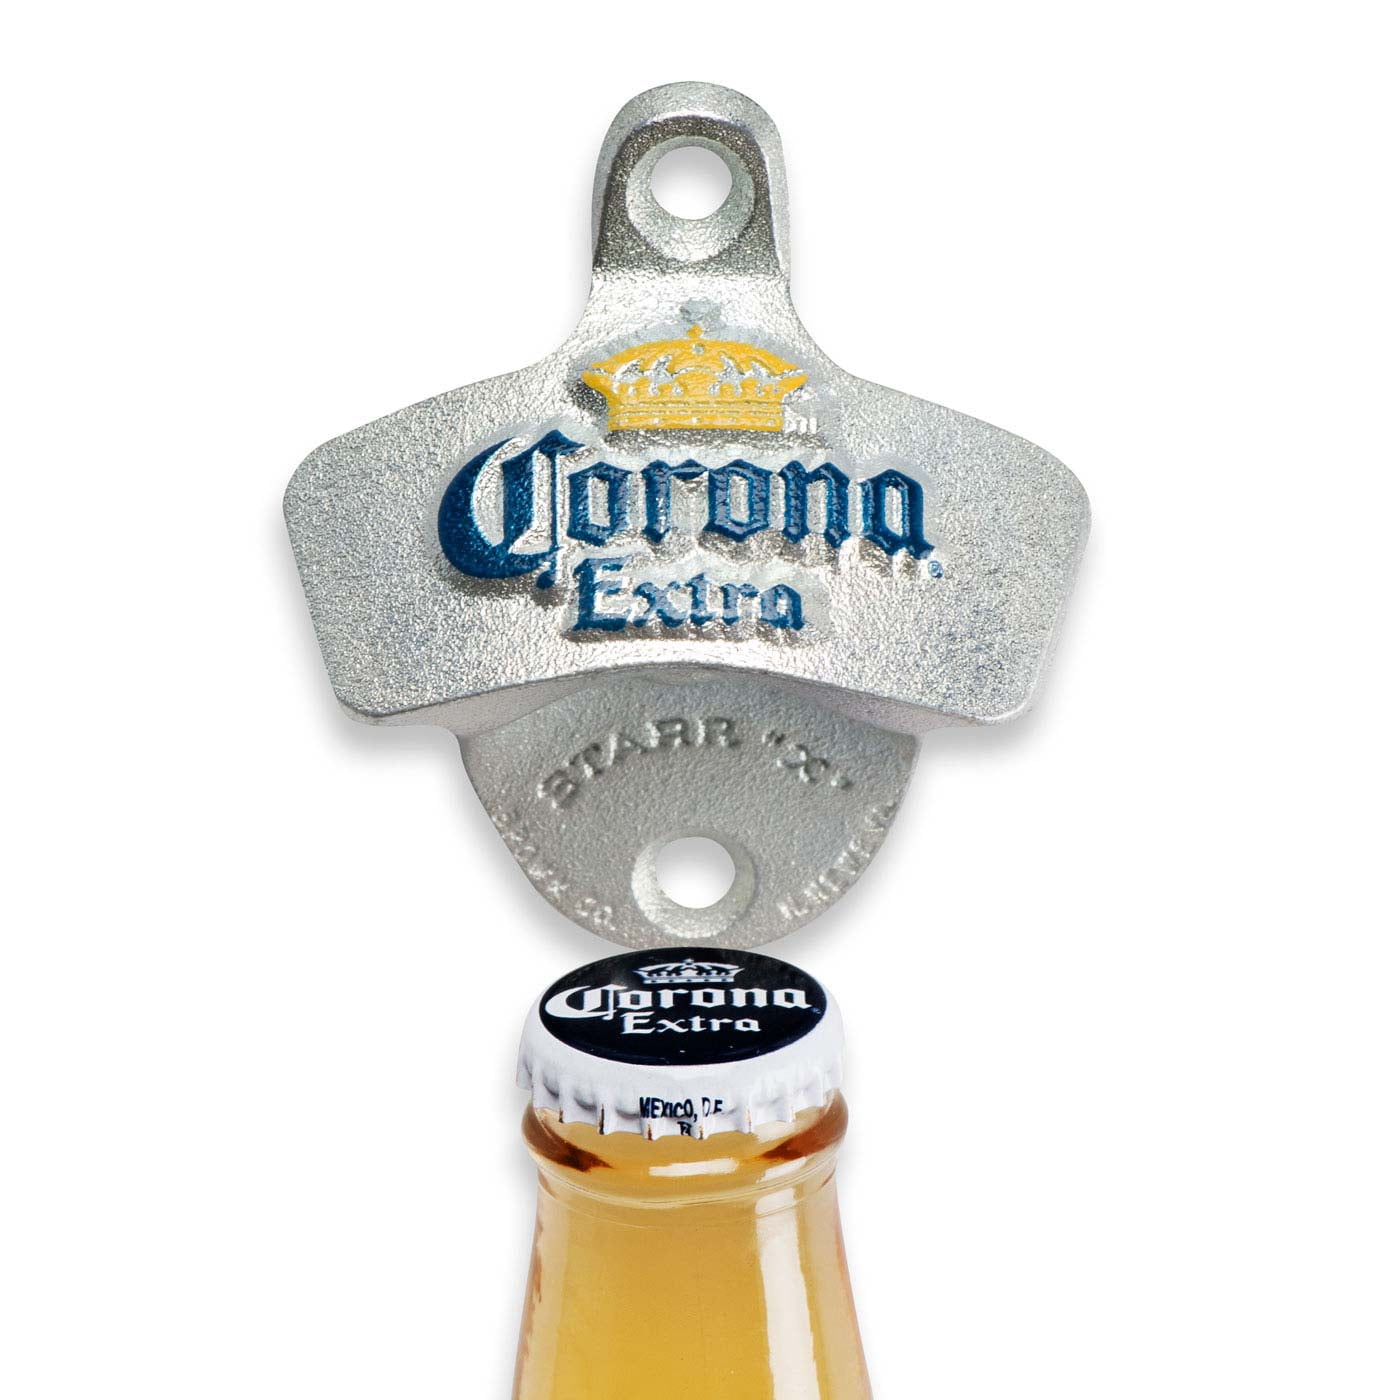 Corona Extra Blue metal wall mounted bottle openers beer openers bar opener tool 